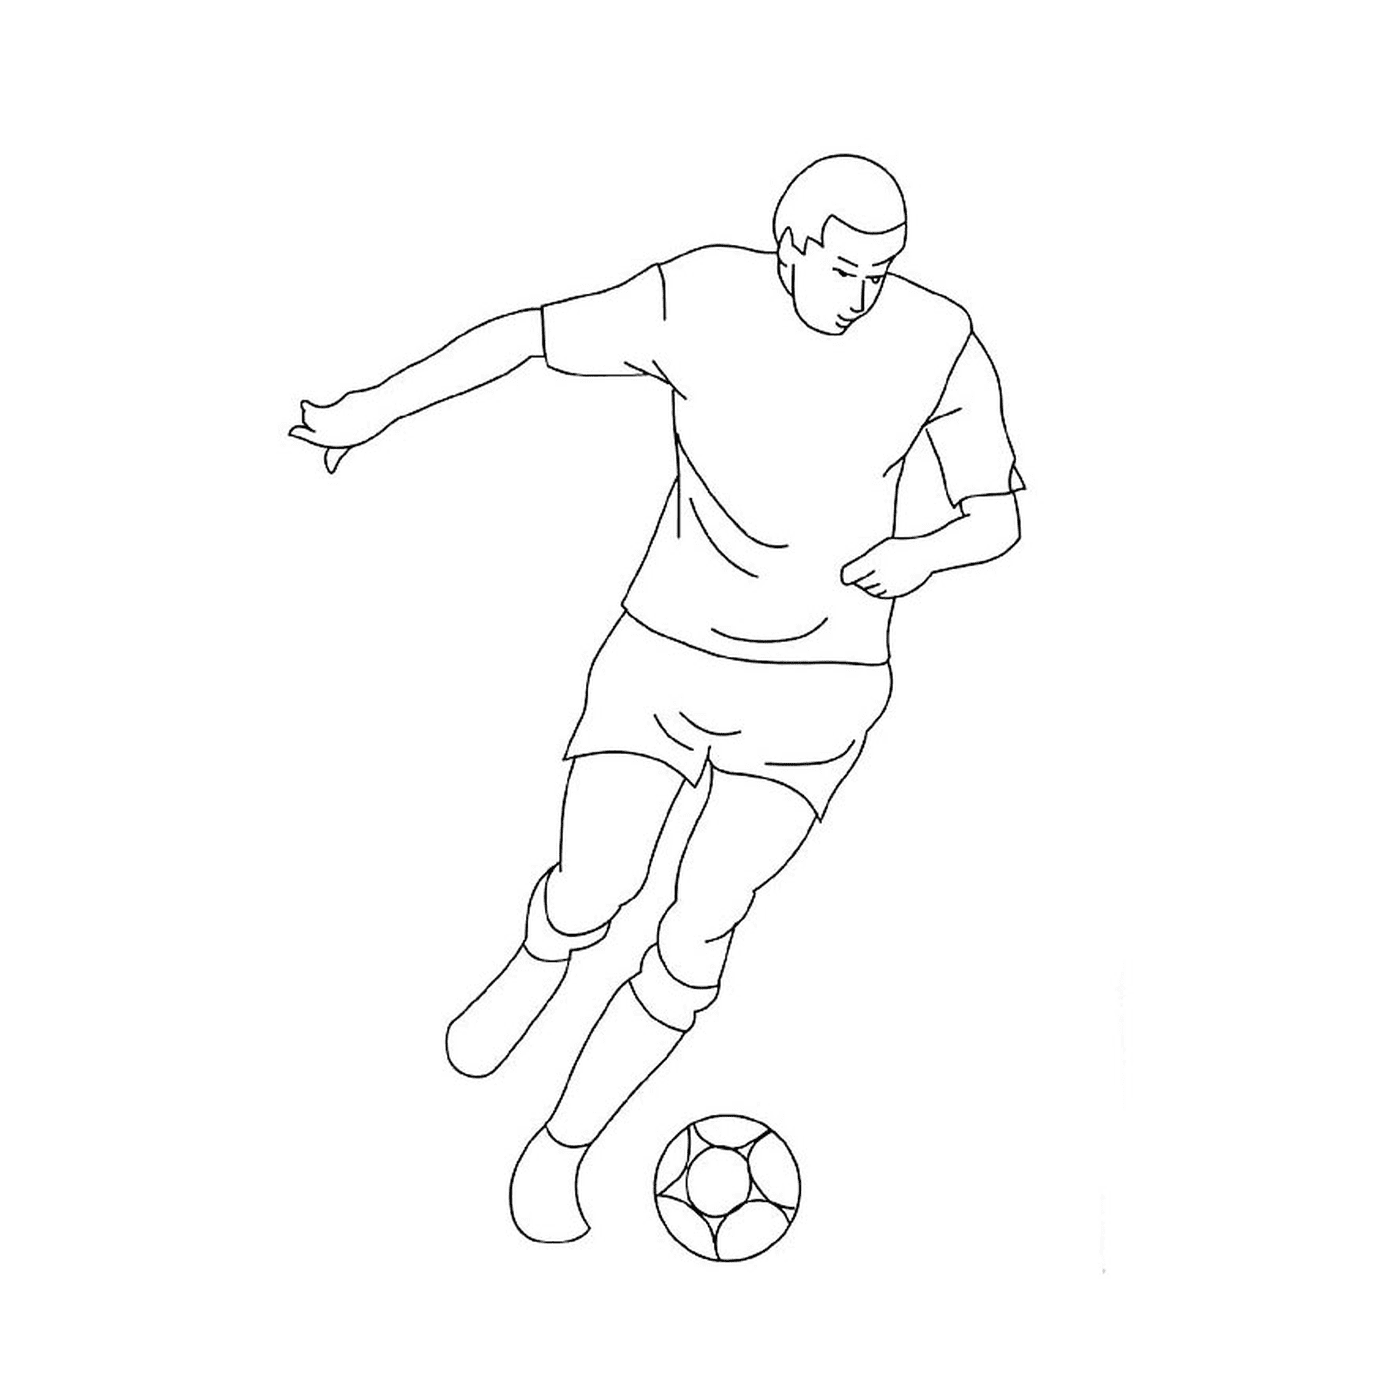  Un uomo gioca a football 